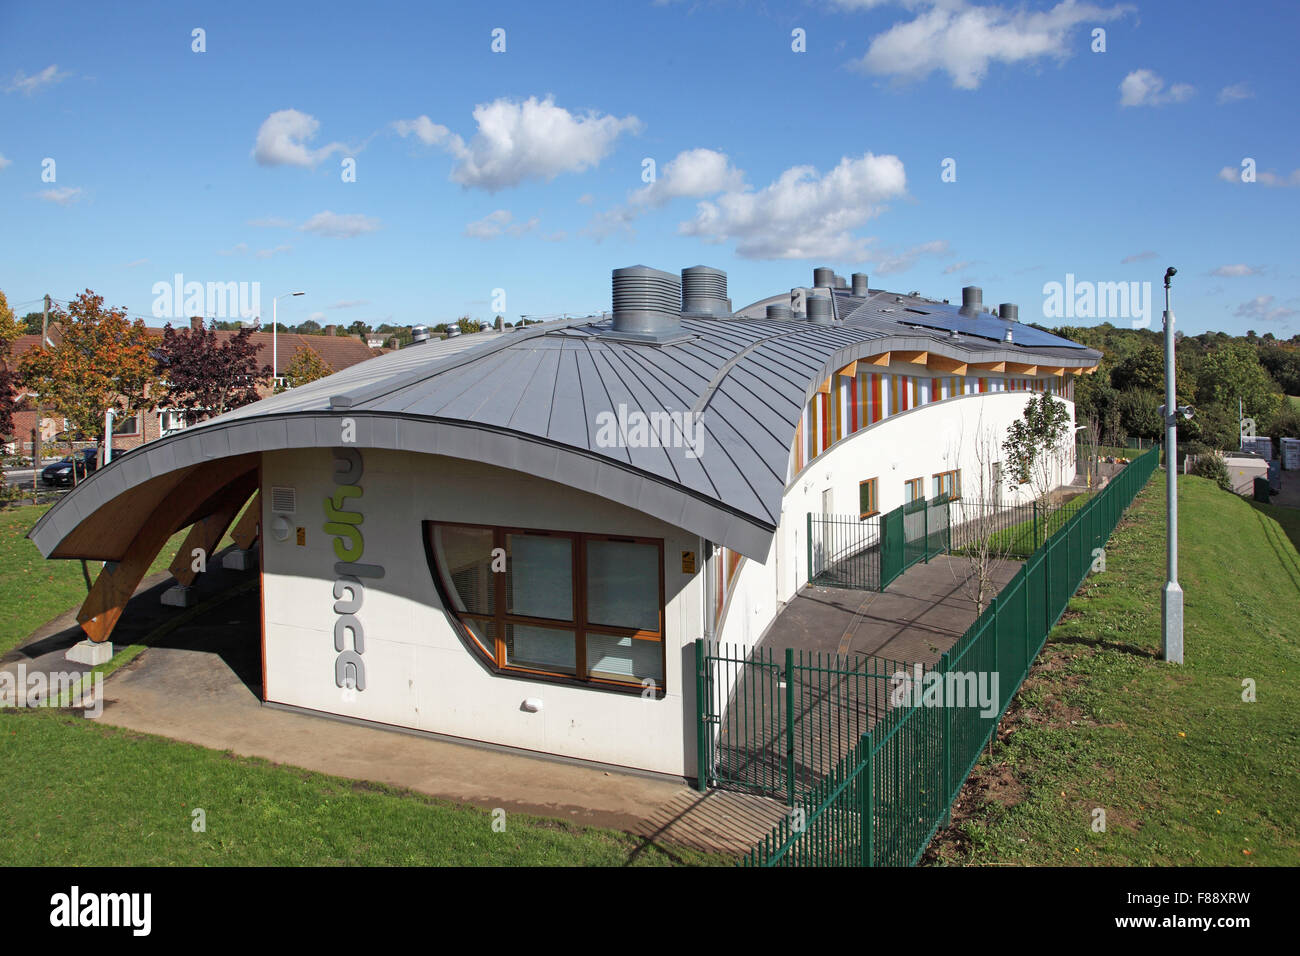 Grobe Sicht auf die MyPlace-Jugendzentrum in Harold Hill, Hackney zeigen die gekrümmten Zink - bekleideten Dach. Stockfoto